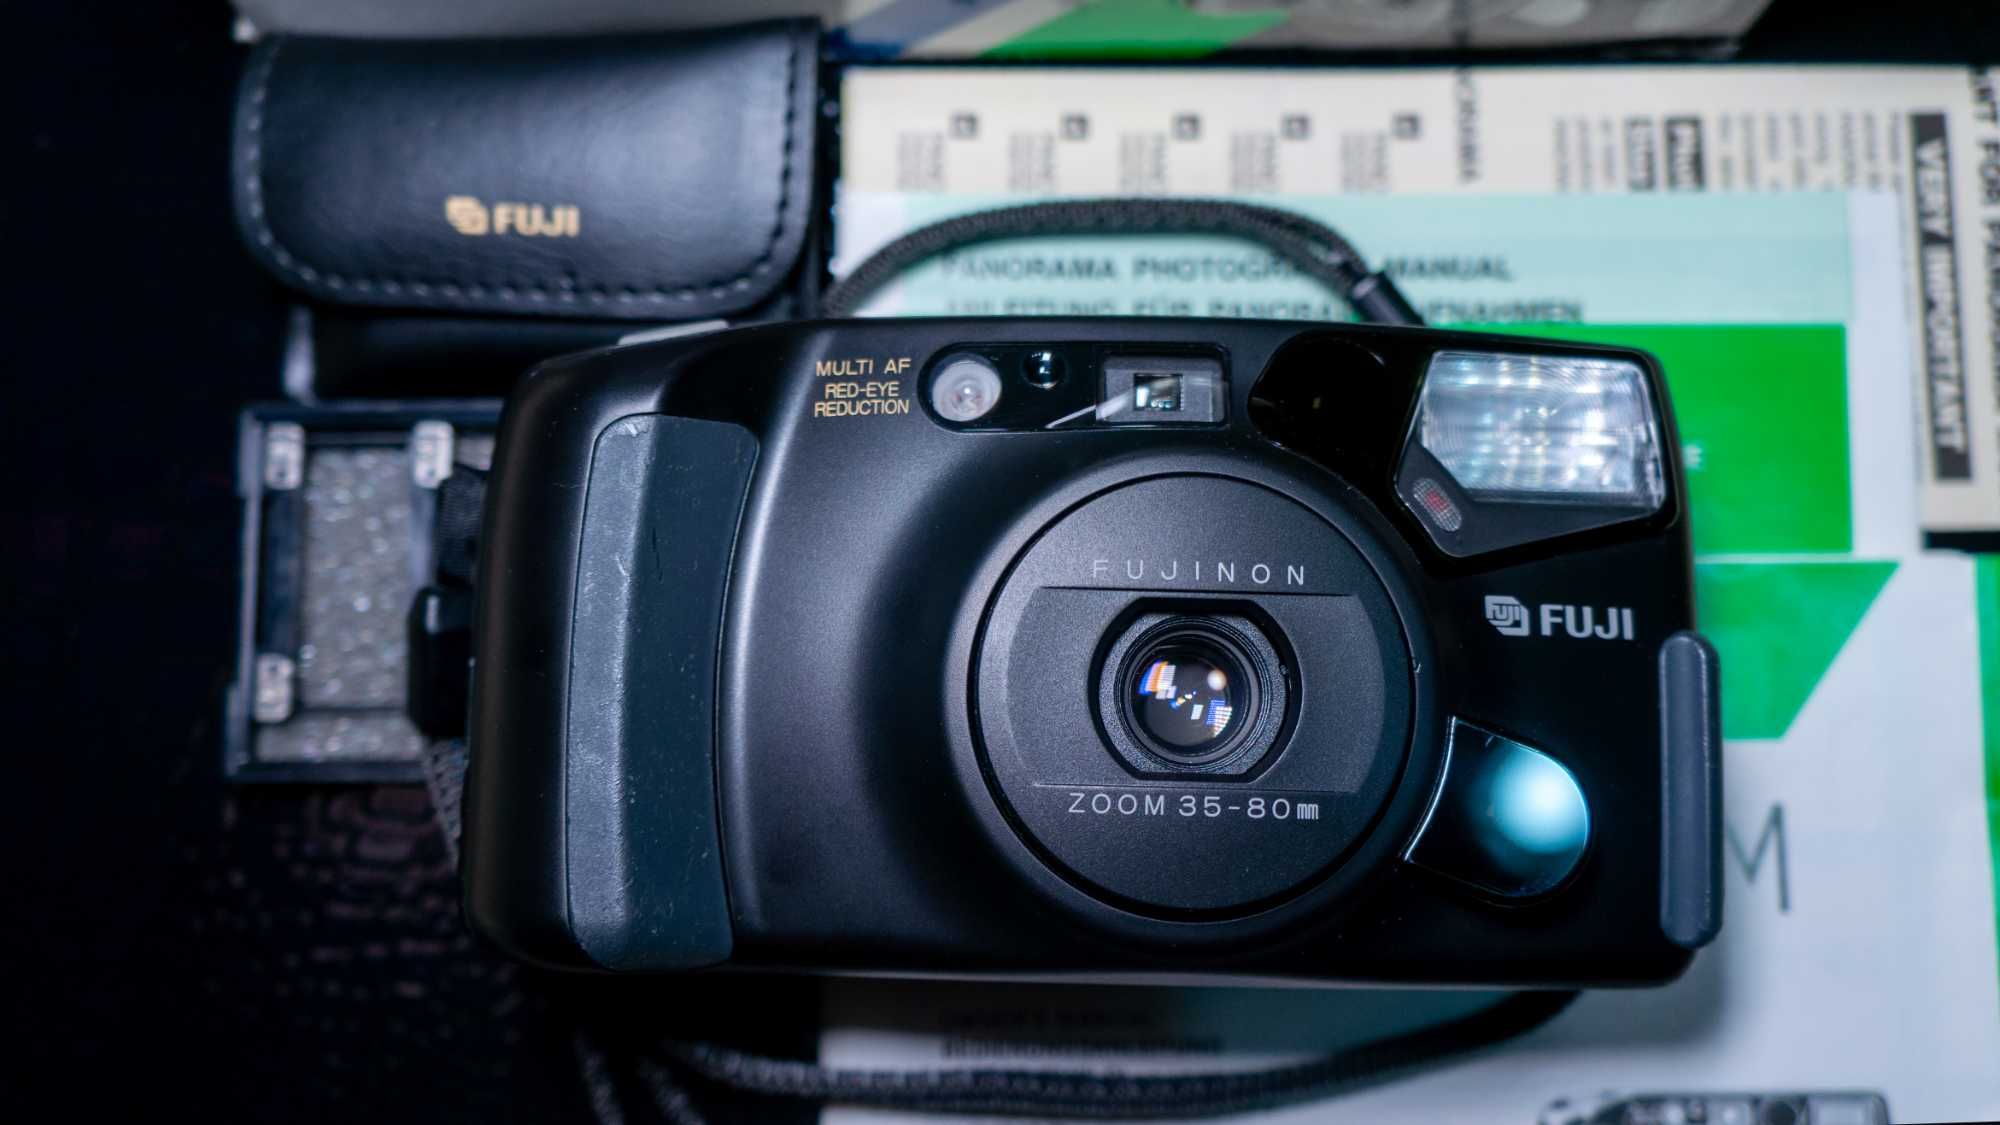 Фотокамера Fuji DL-1000 Zoom Date коробка ремінець доки фотоаппарат